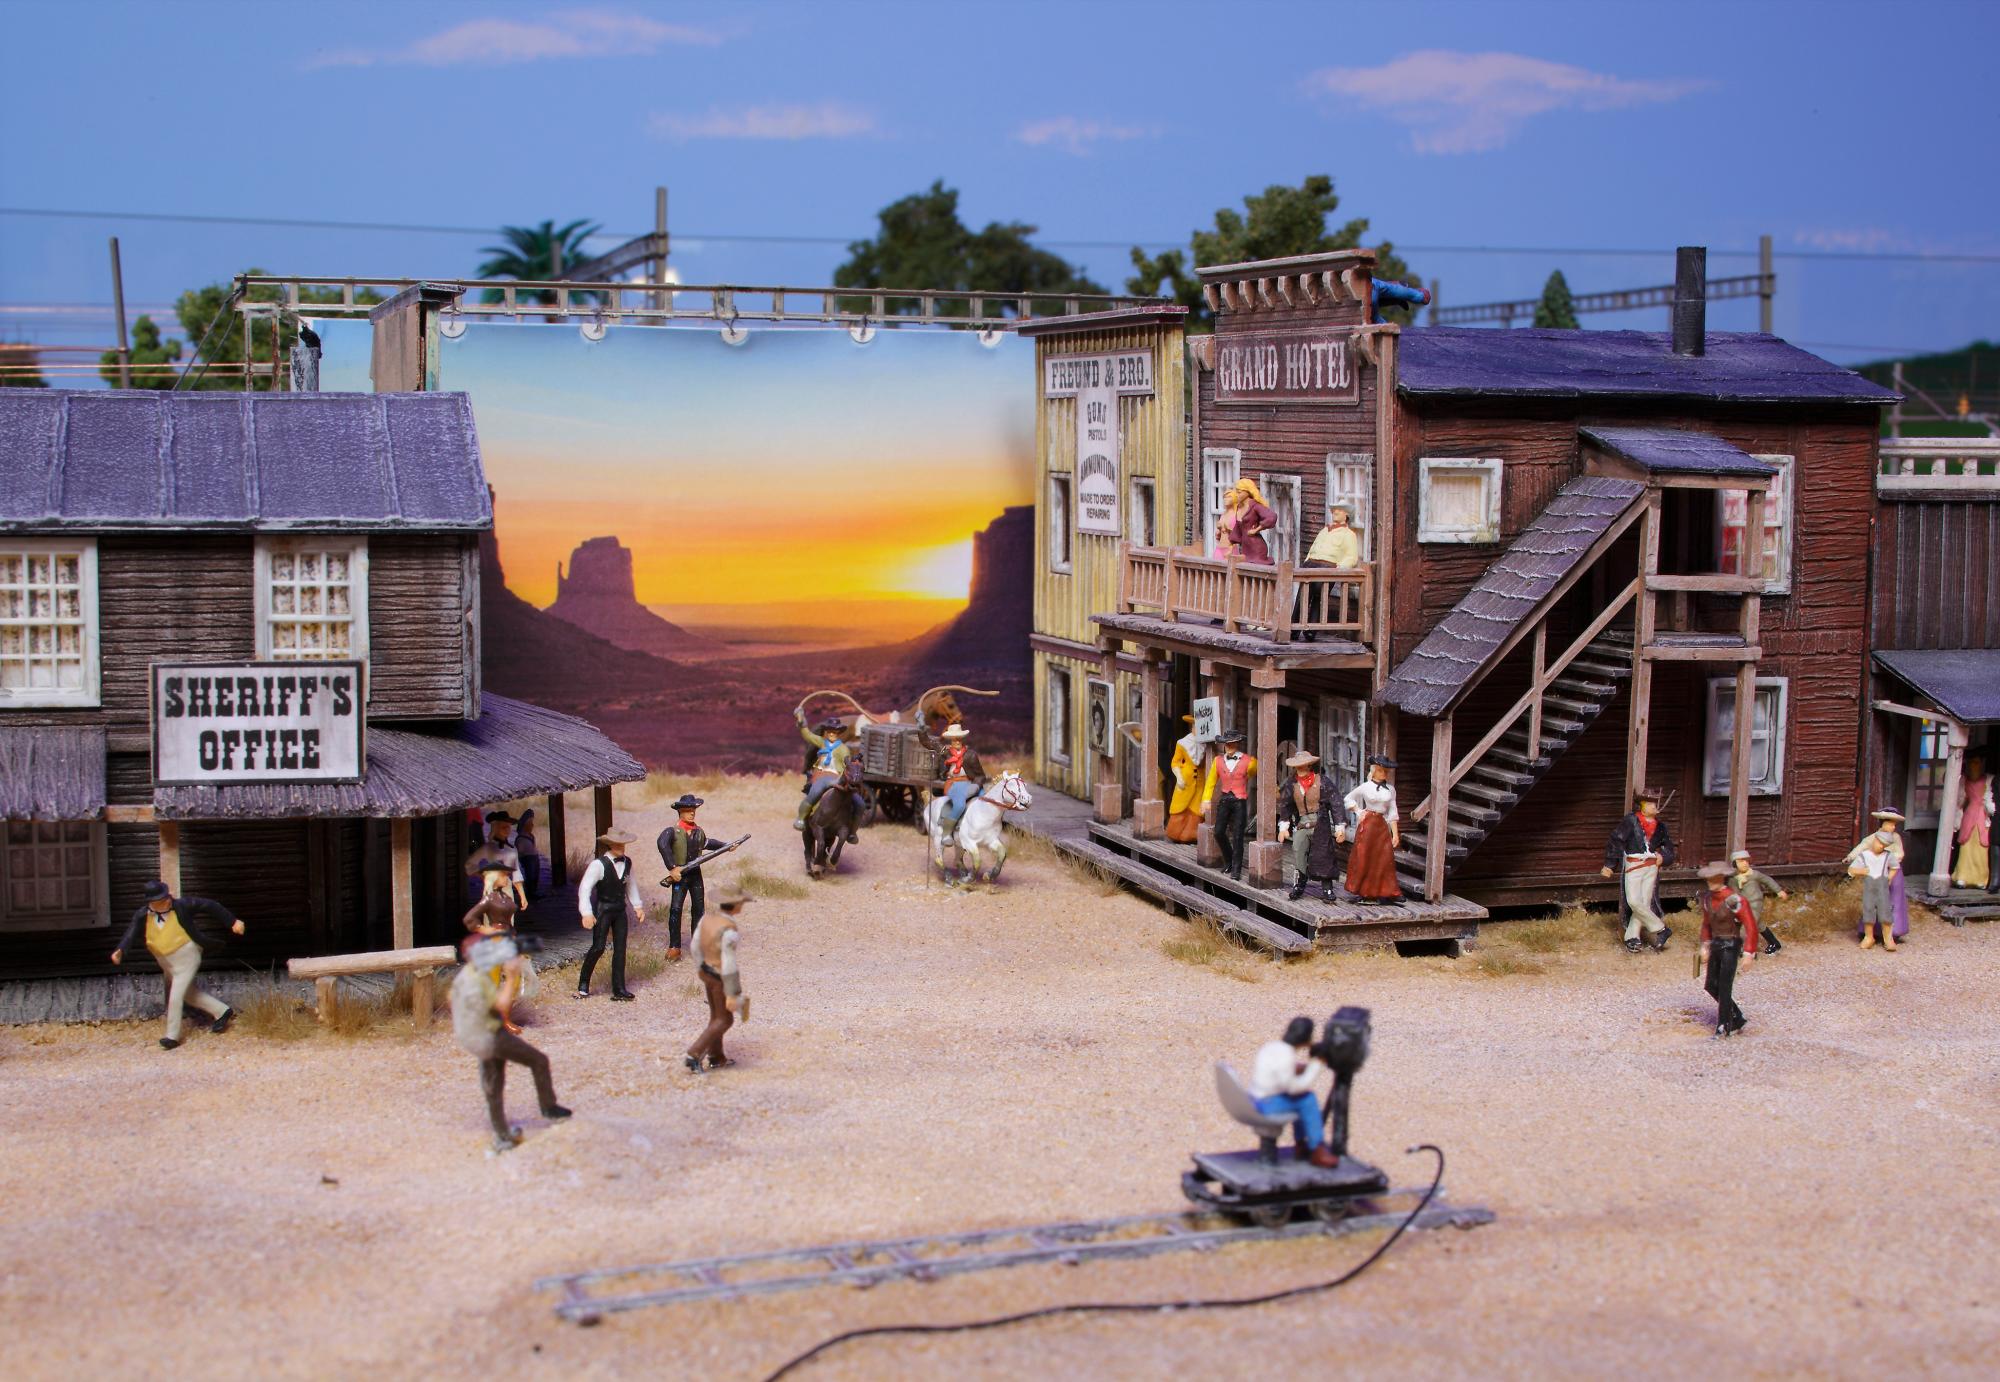 Hasta un poblado del oeste, filmando una película se puede ver en el museo de miniaturas de Hamburgo.